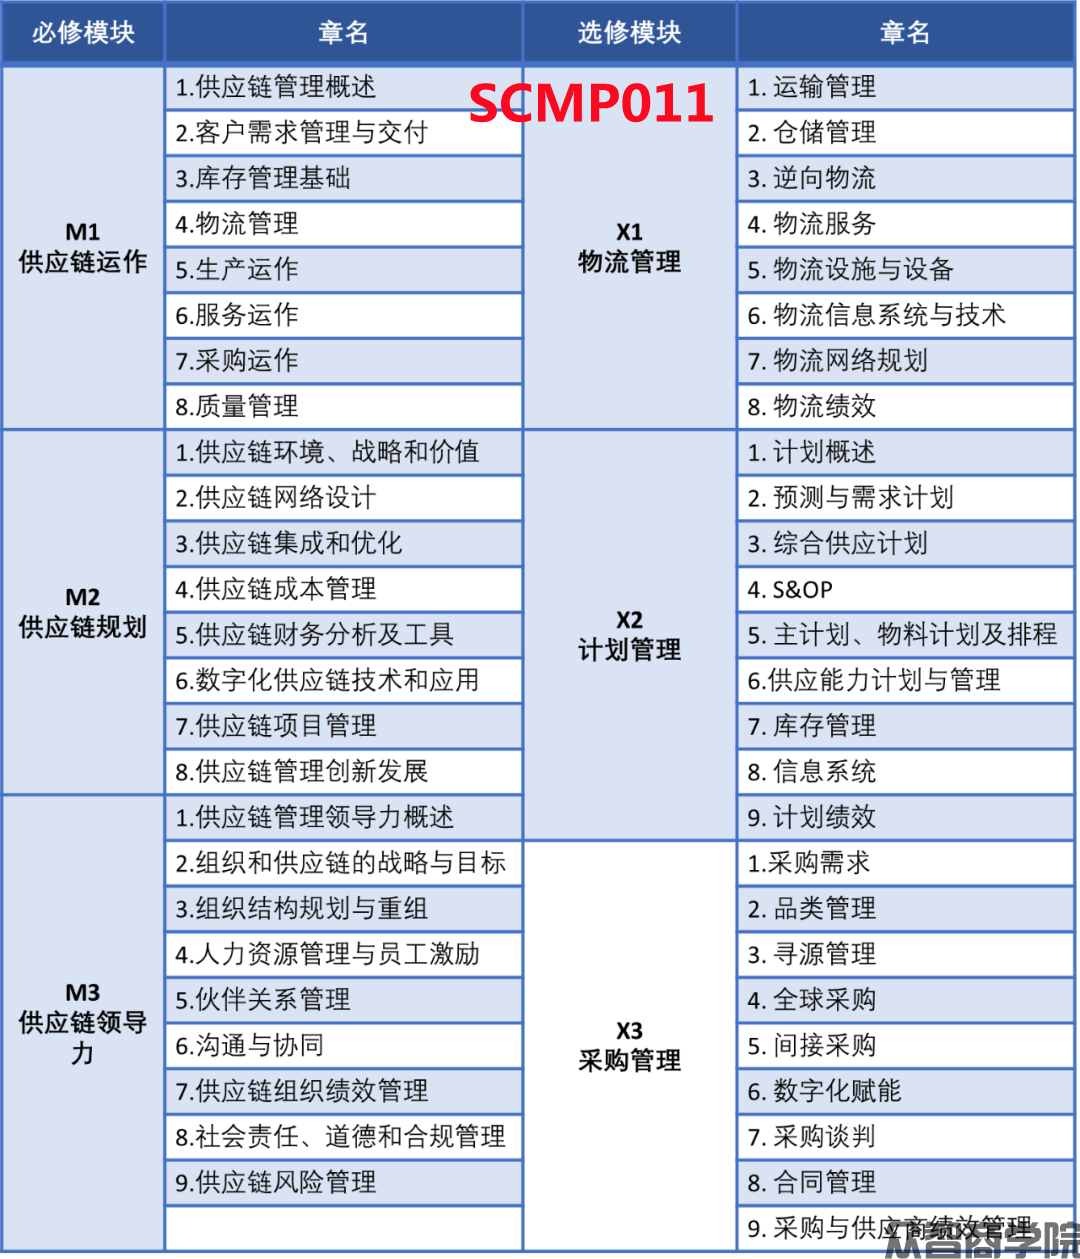 2023年SCMP供应链管理专家改版通知(图1)